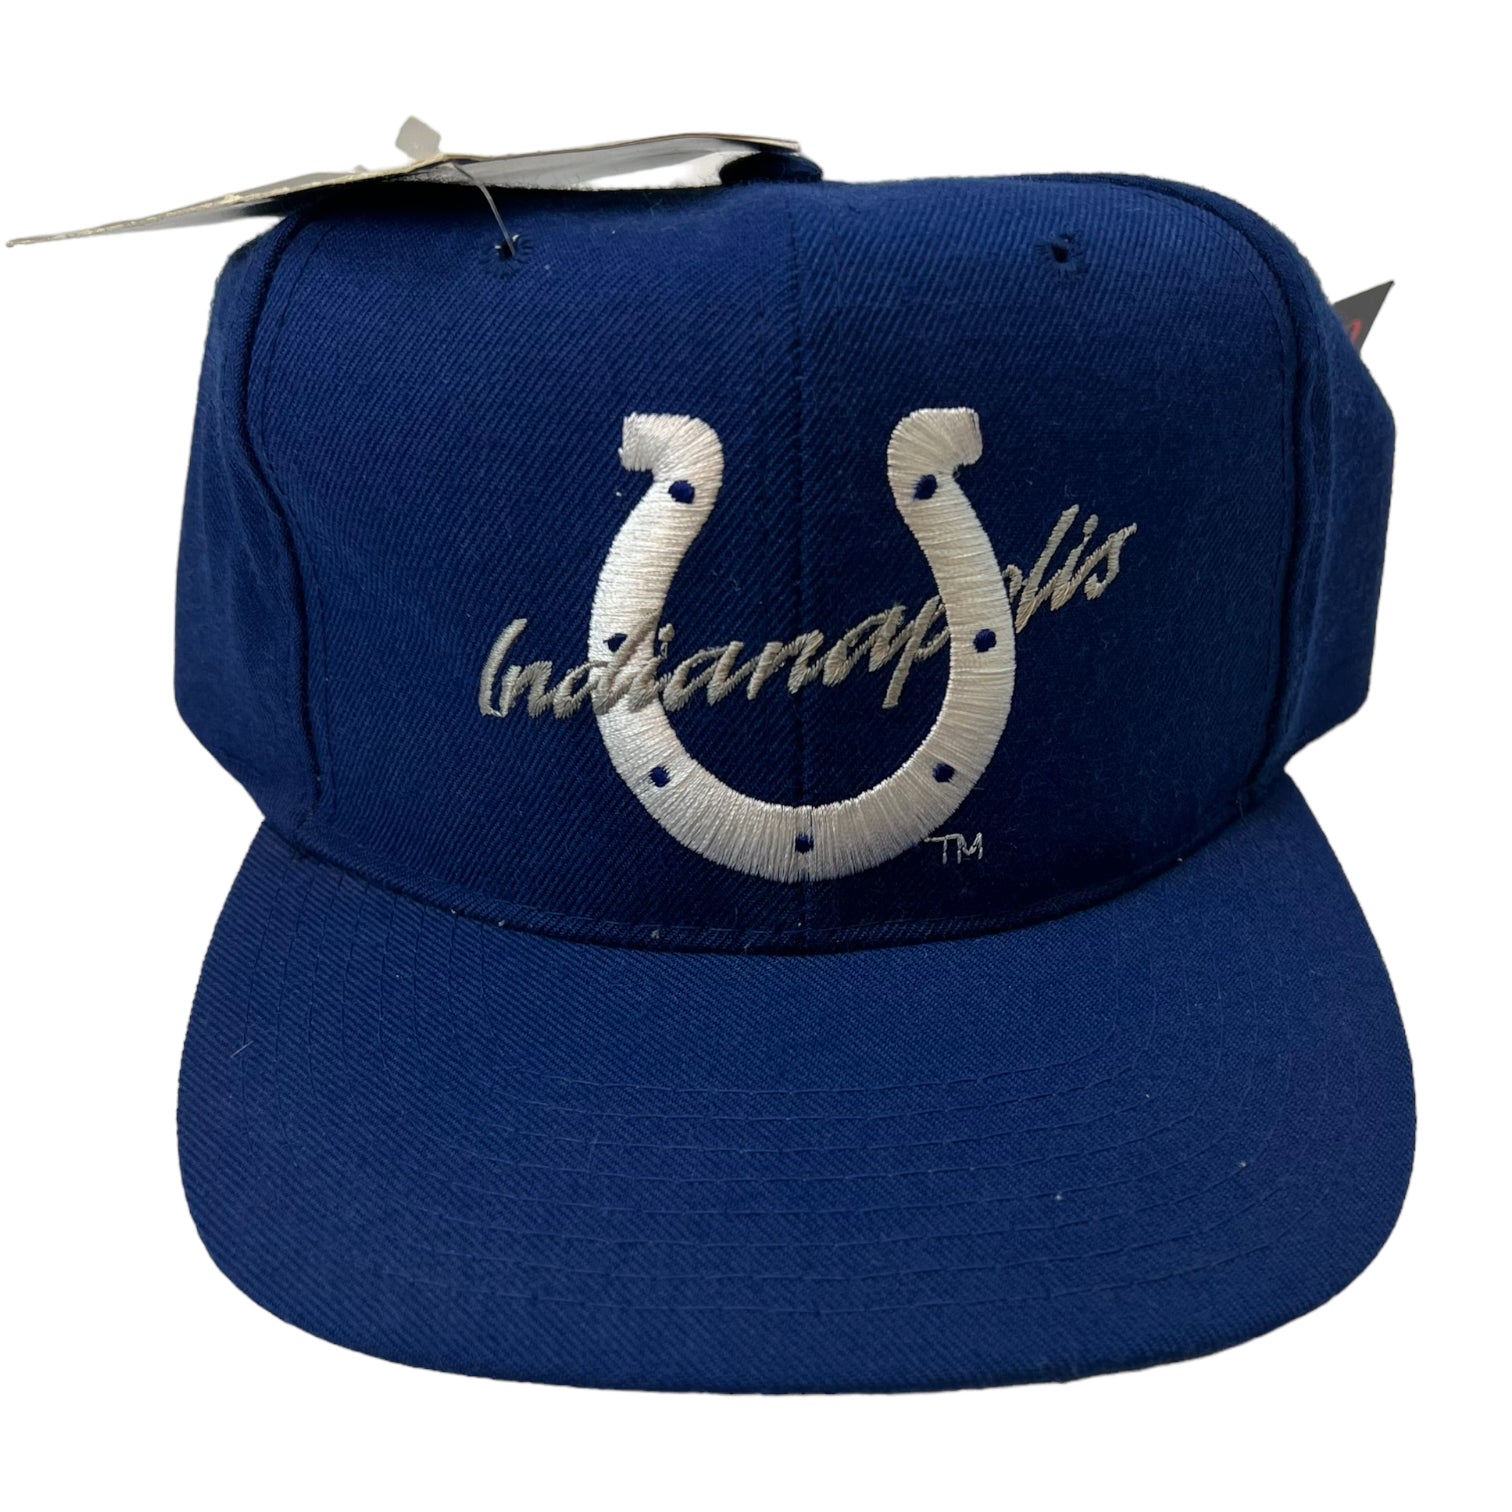 Vintage Indianapolis Colts Hat Blue